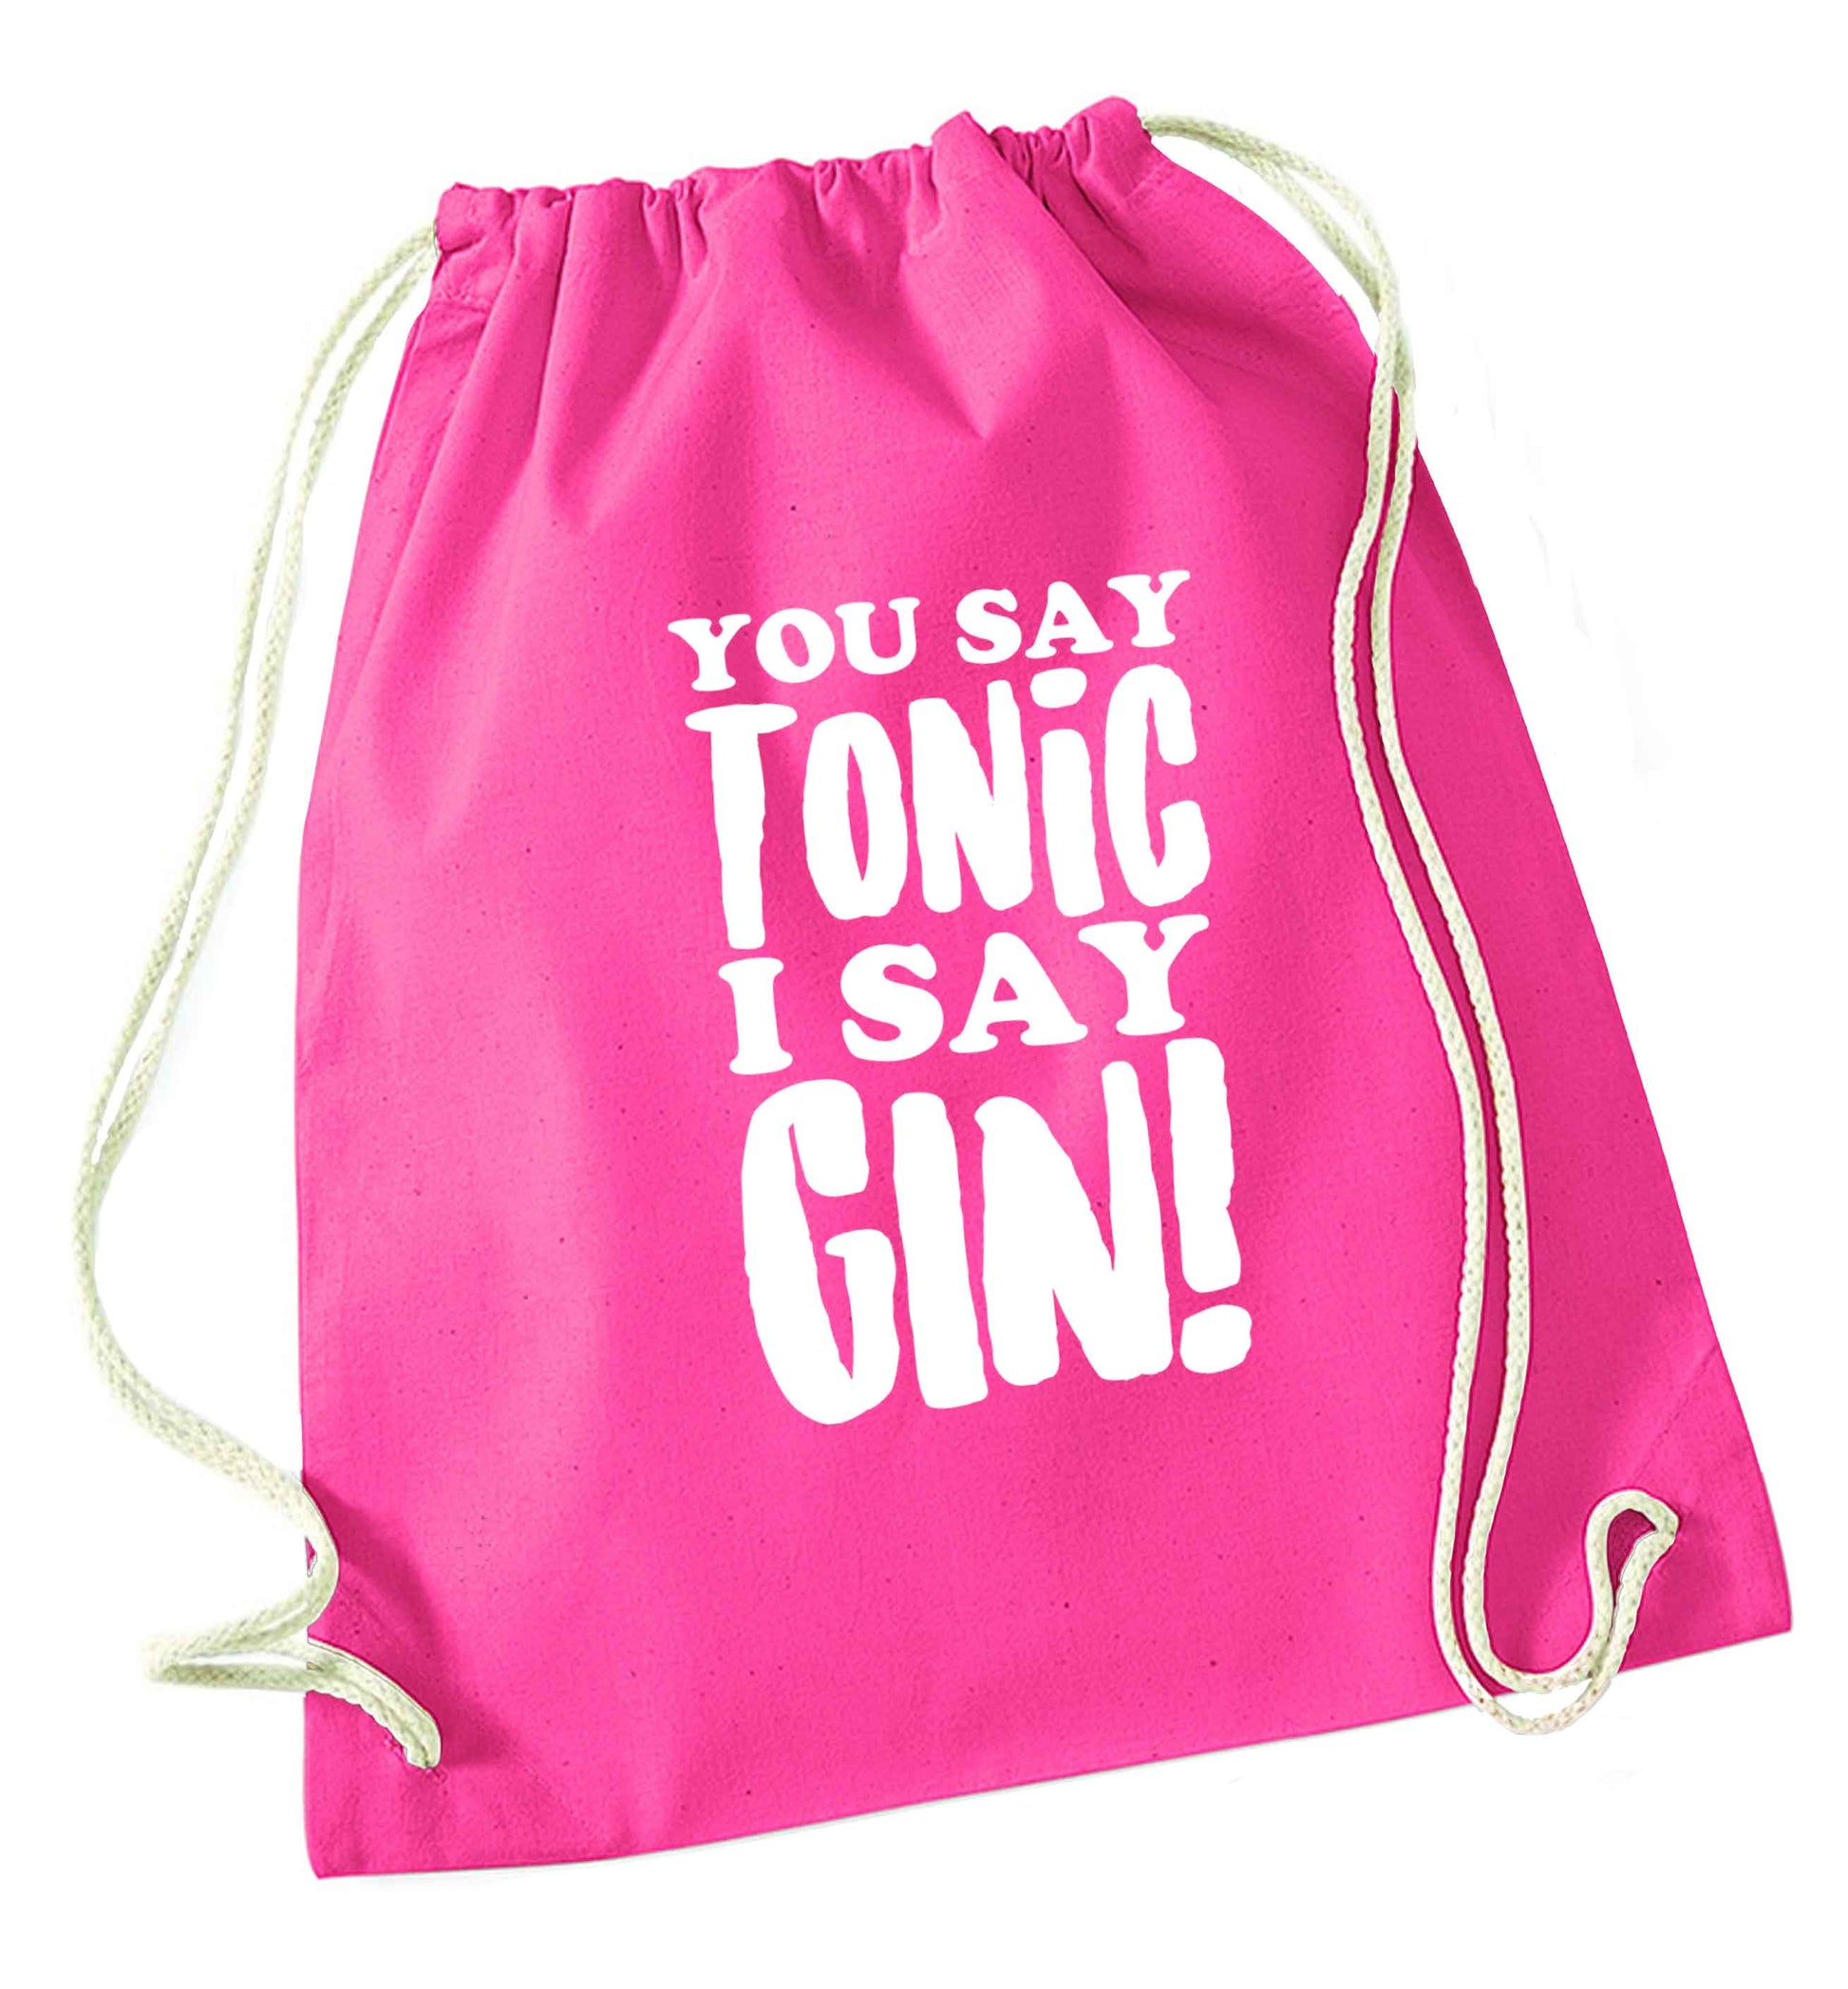 You say tonic I say gin pink drawstring bag